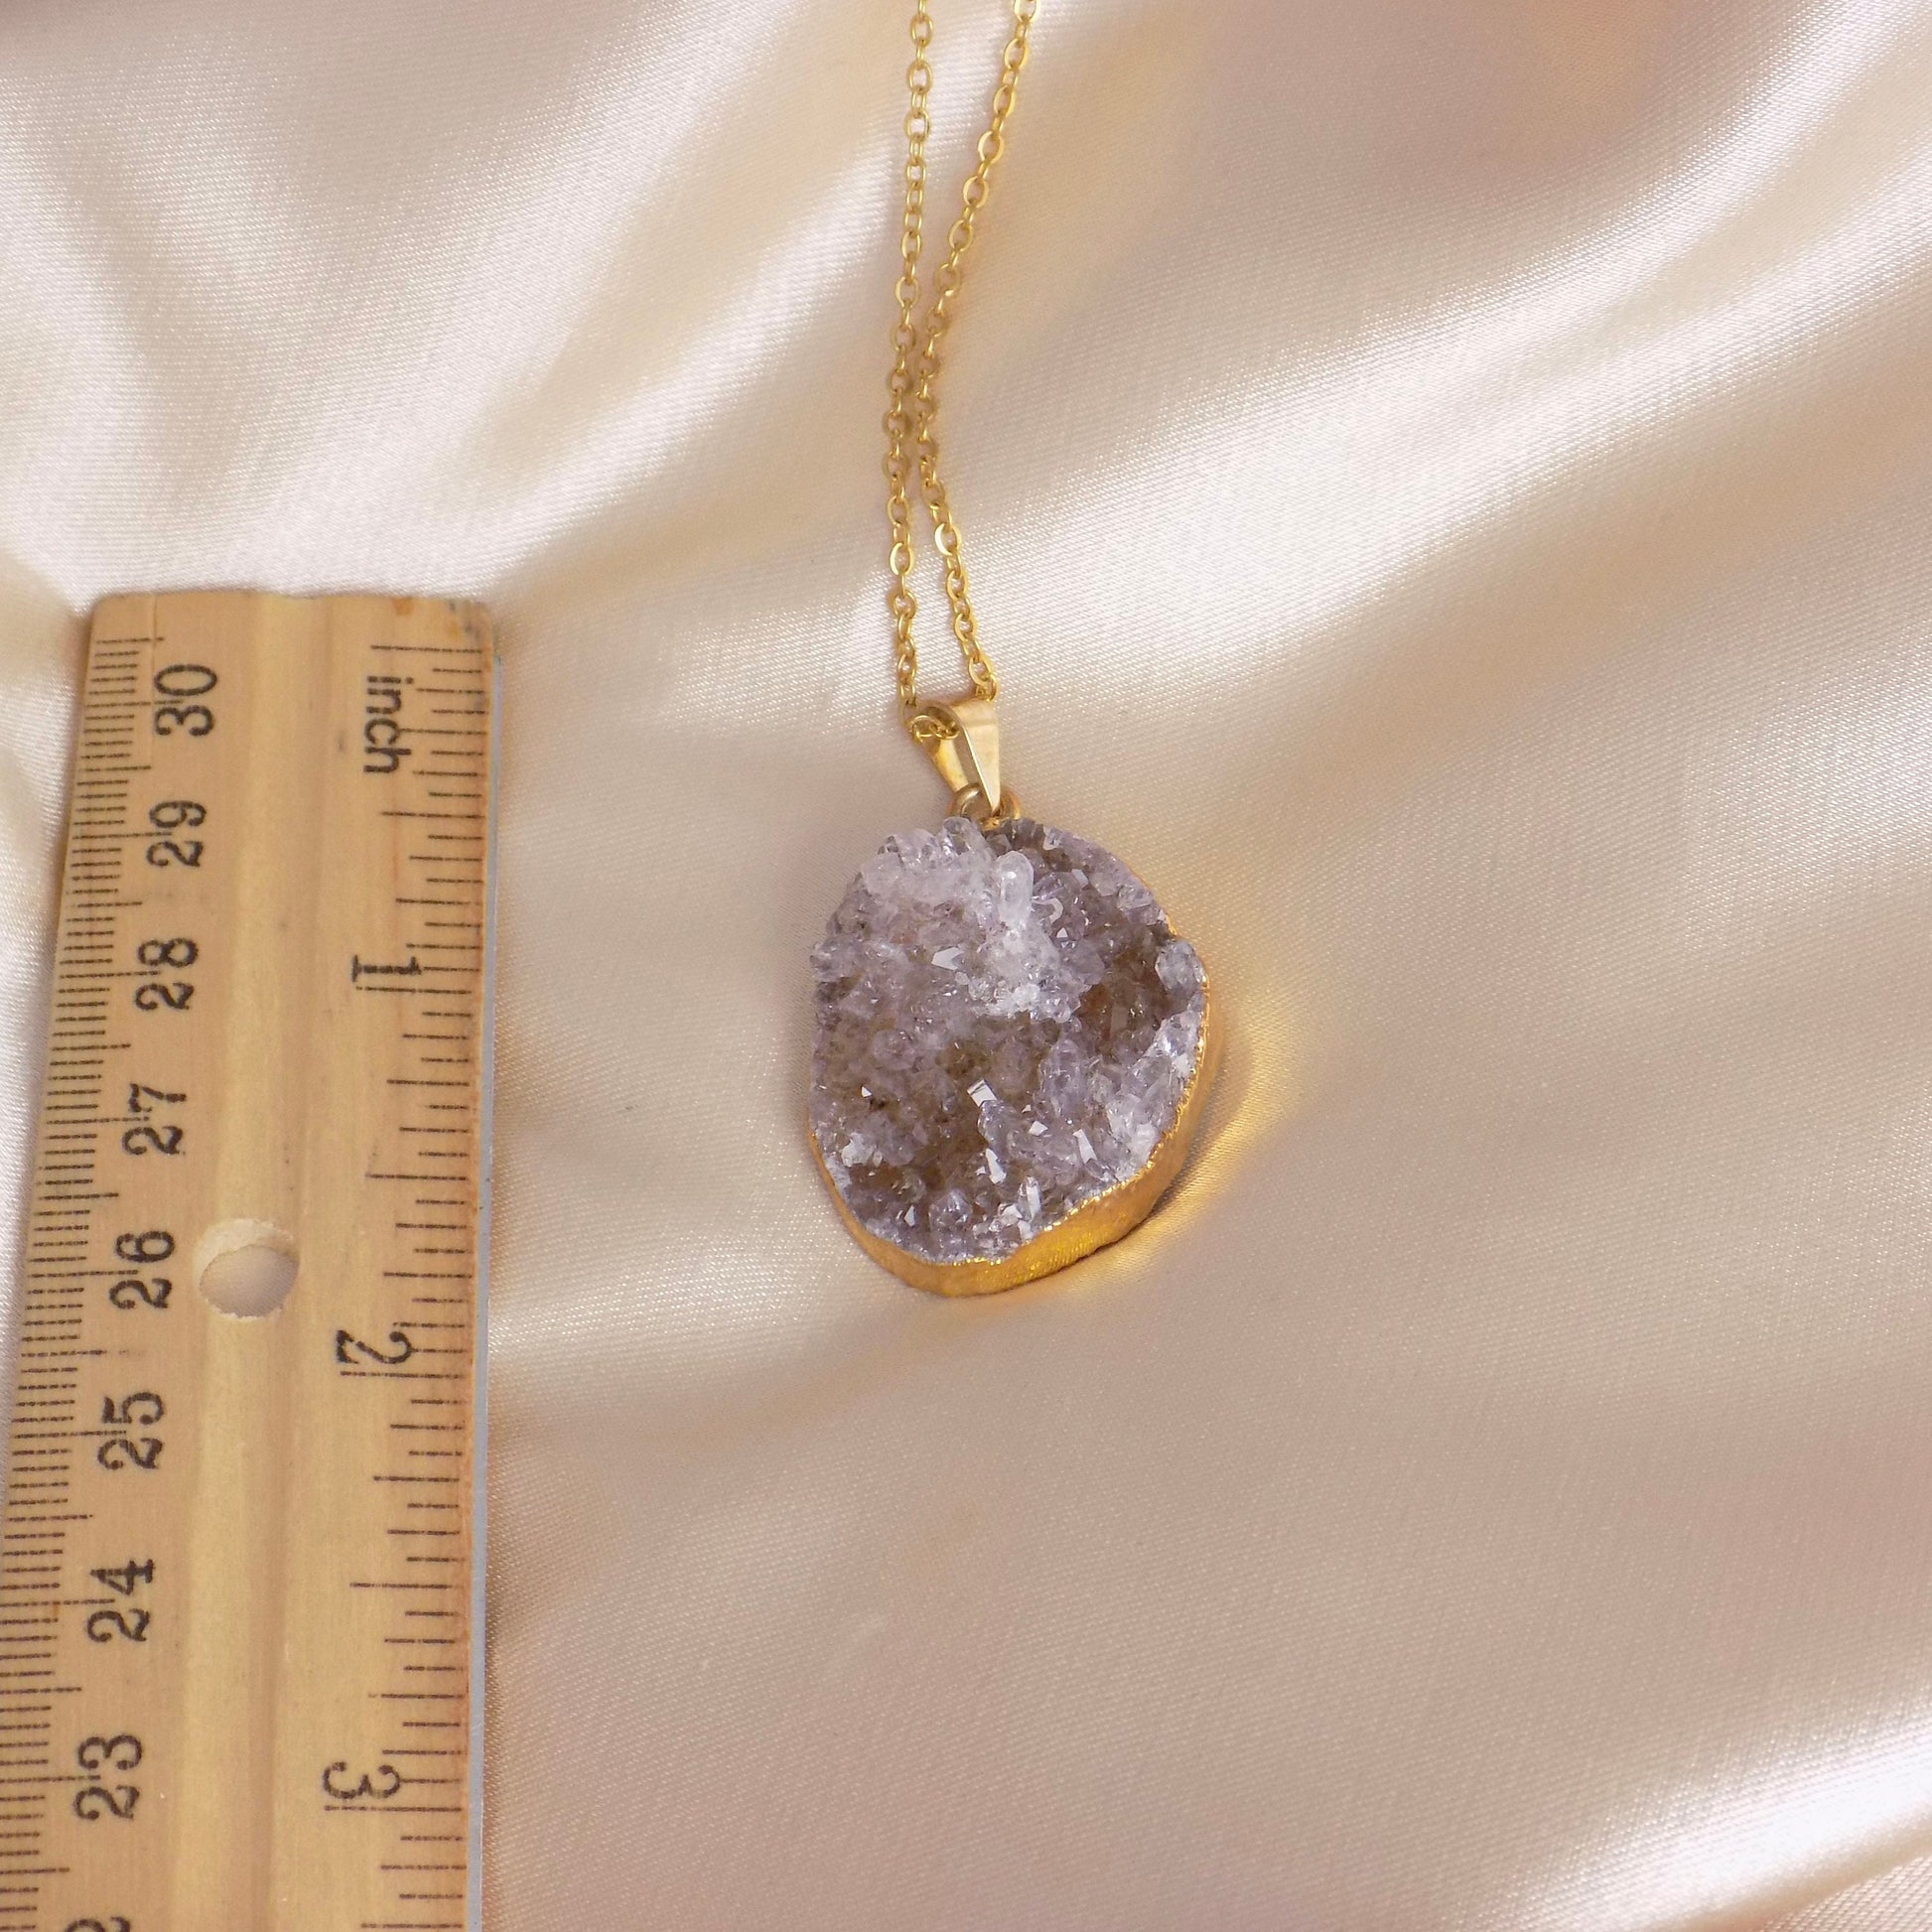 Unique Druzy Pendant Necklace Gold, Amethyst Necklaces, Christmas Gift Women, R15-142